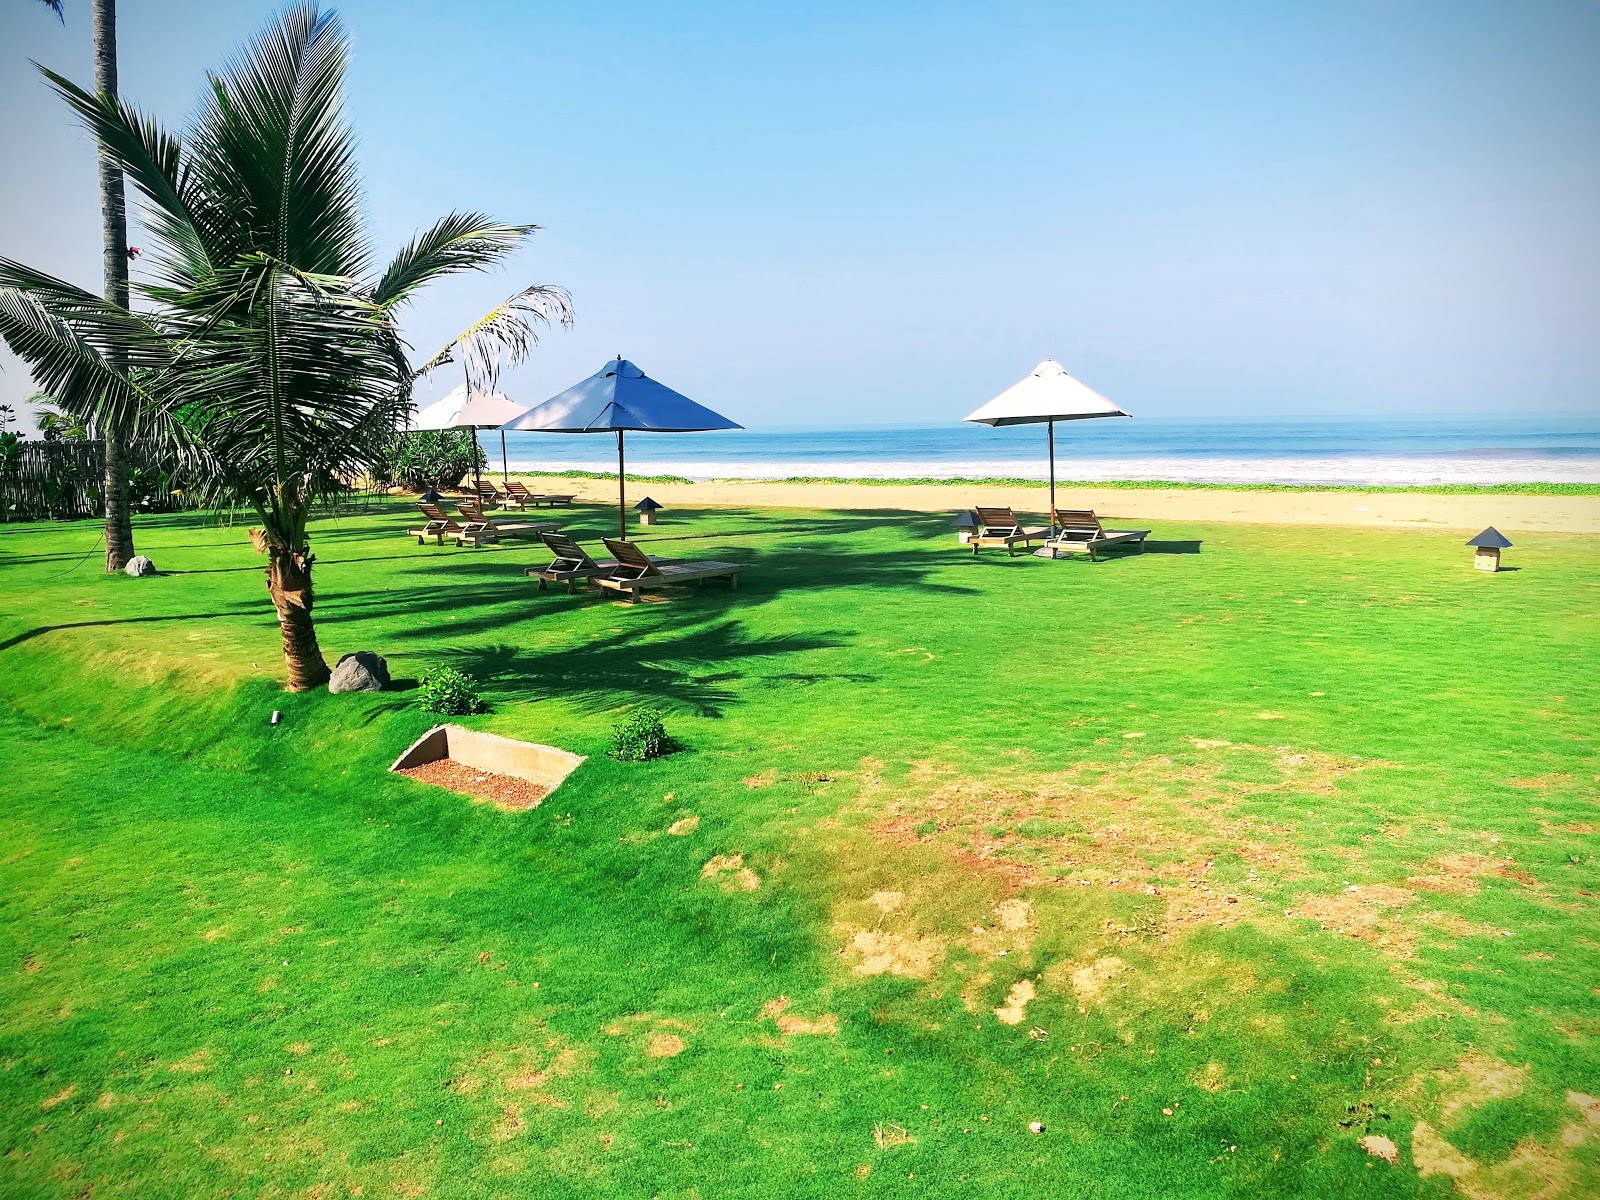 Zdjęcie Dolphin hotel beach - popularne miejsce wśród znawców relaksu